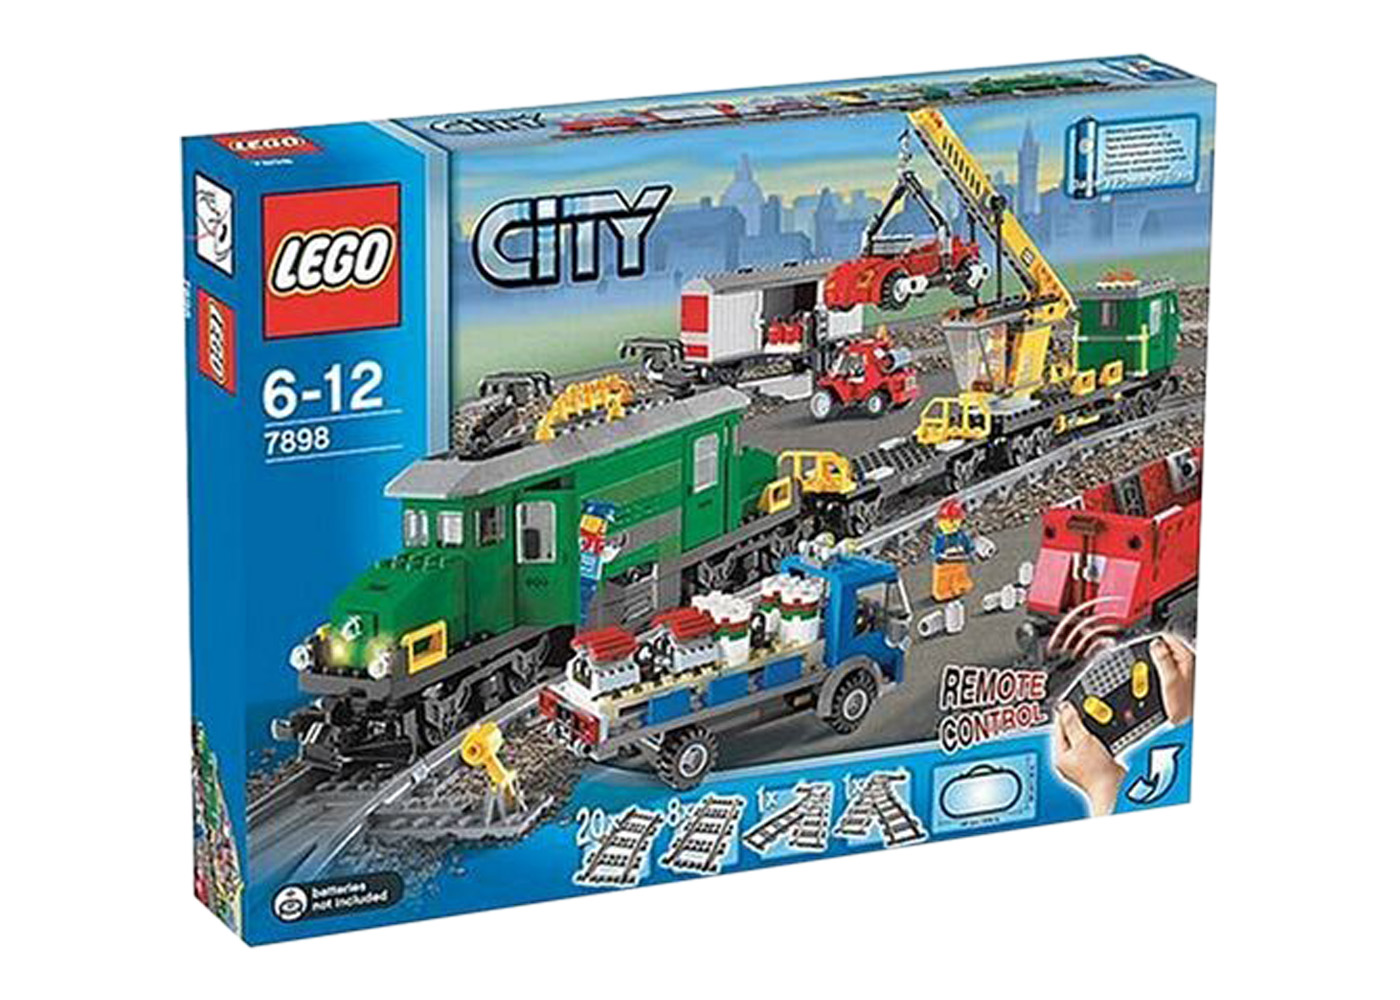 LEGO City Cargo Train Deluxe Set 7898 - US